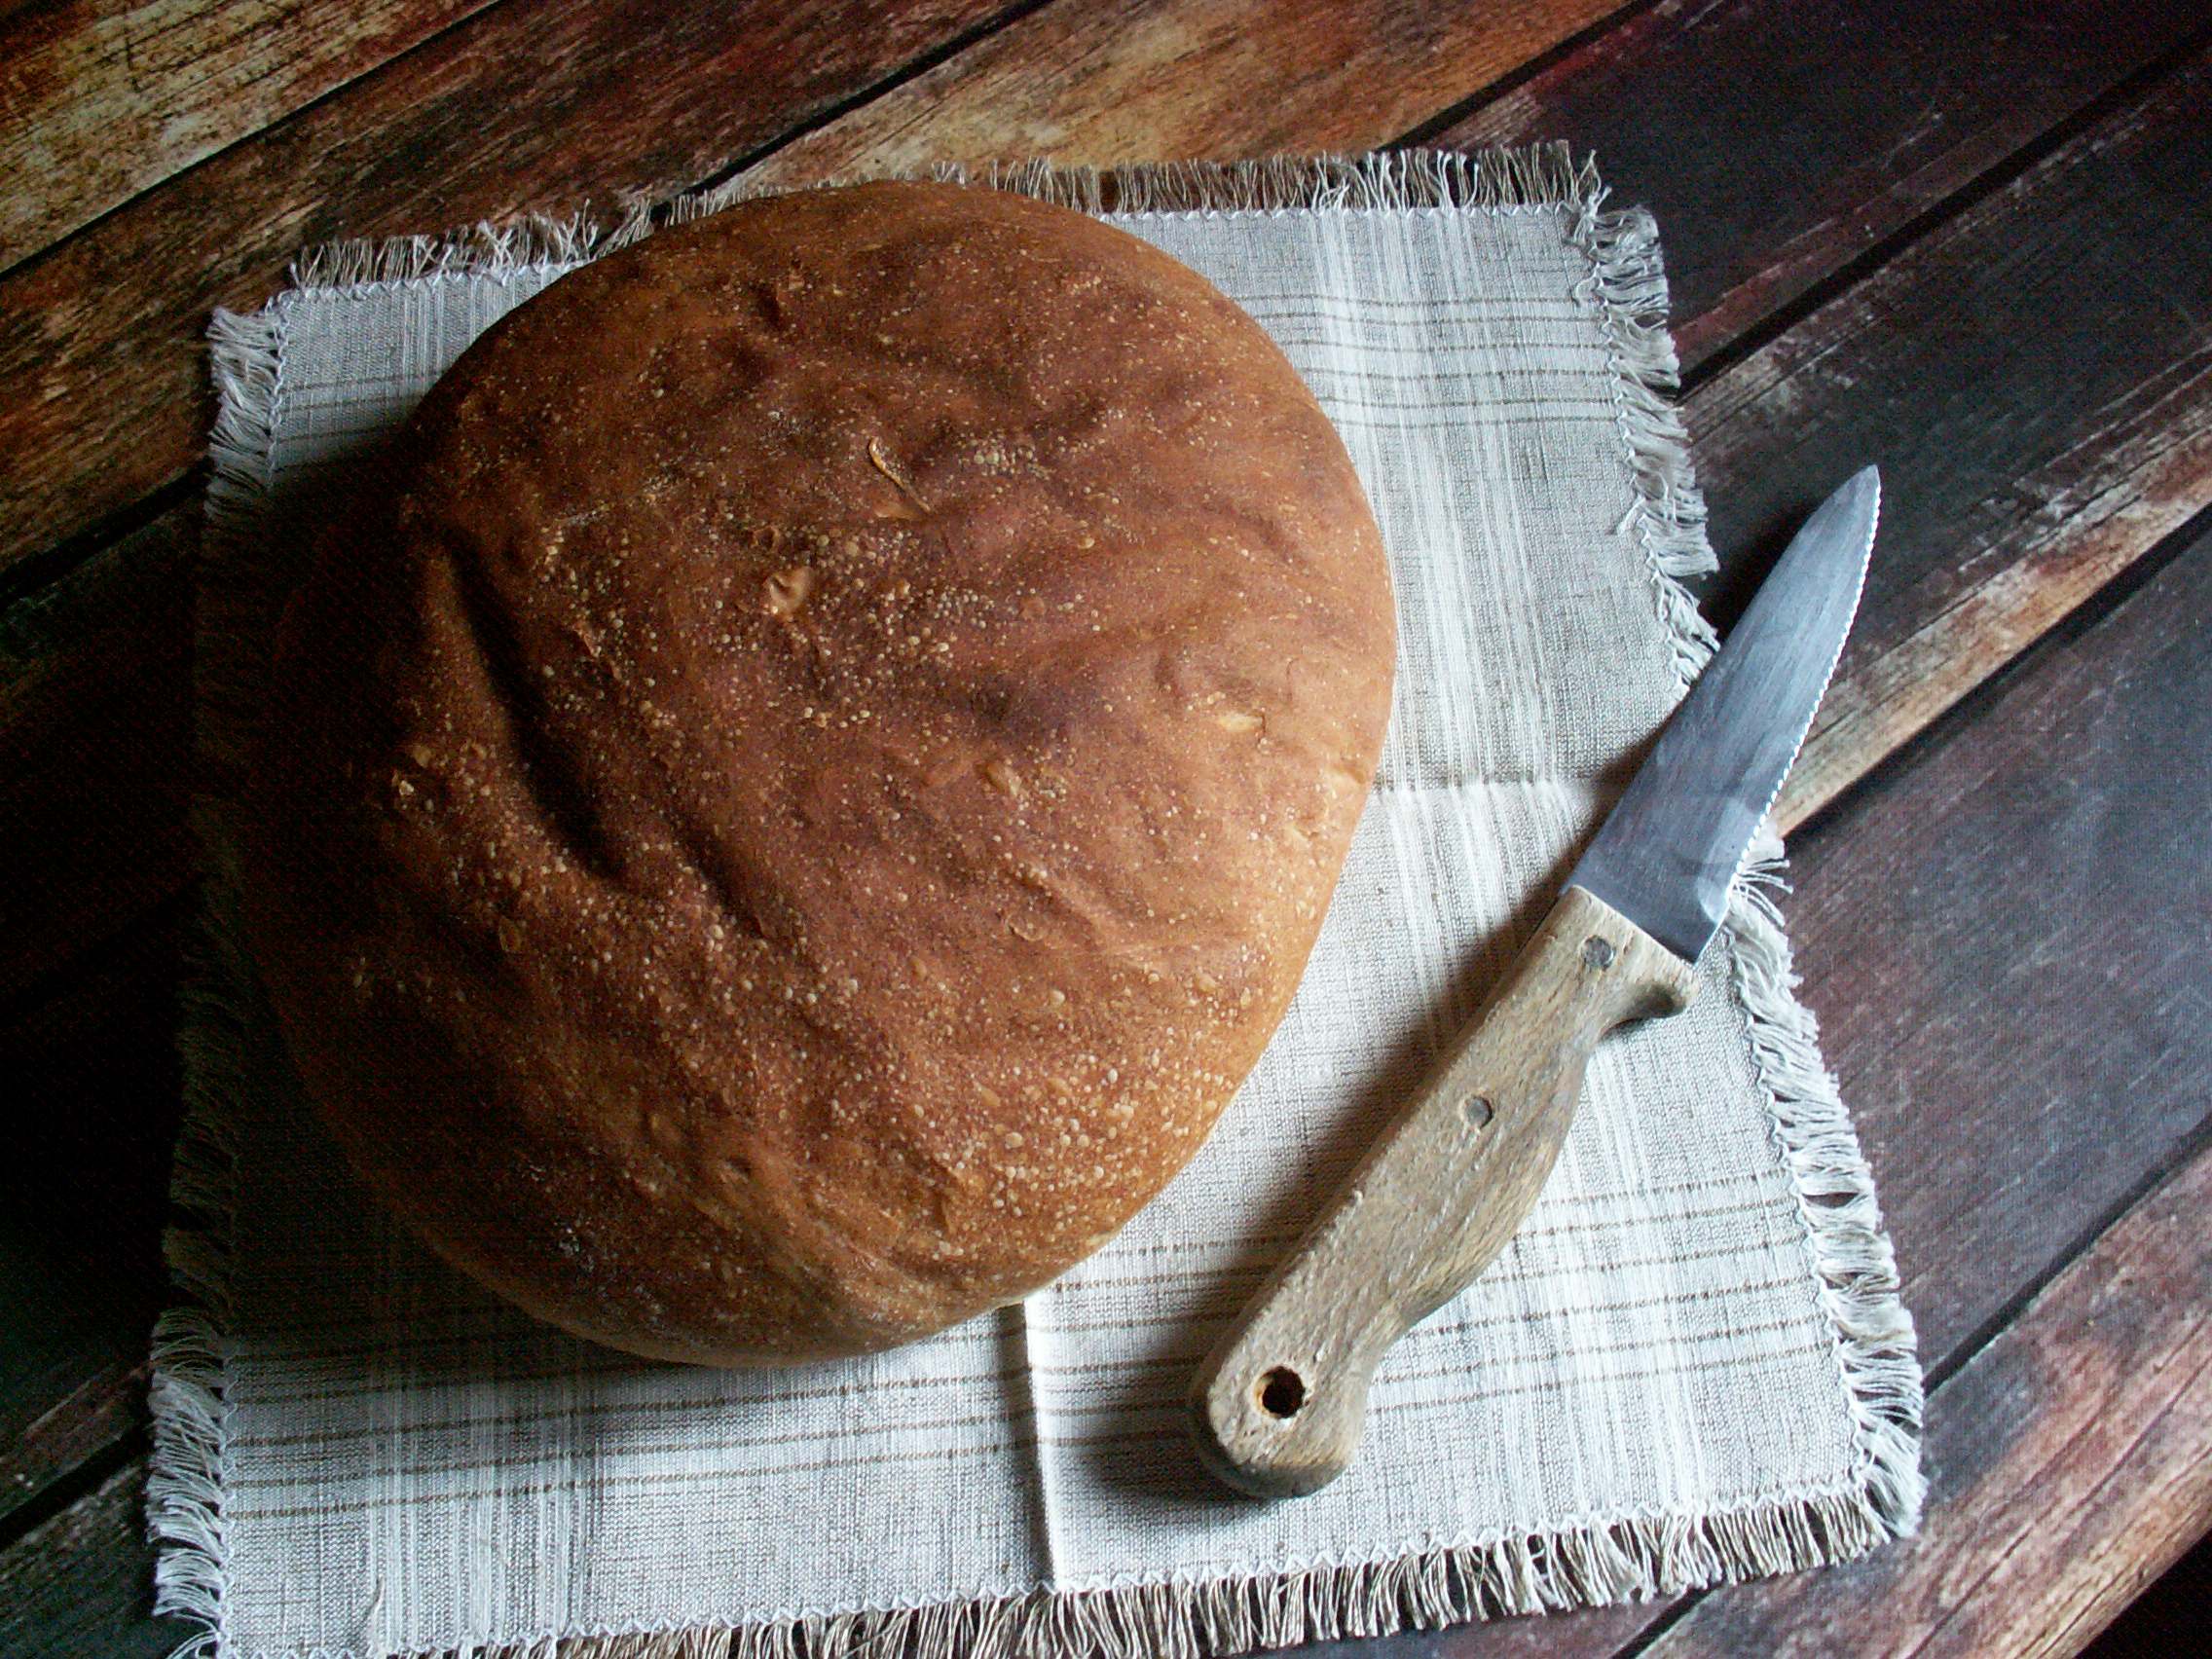 Chleb biały upieczony w ramach sierpniowej piekarni